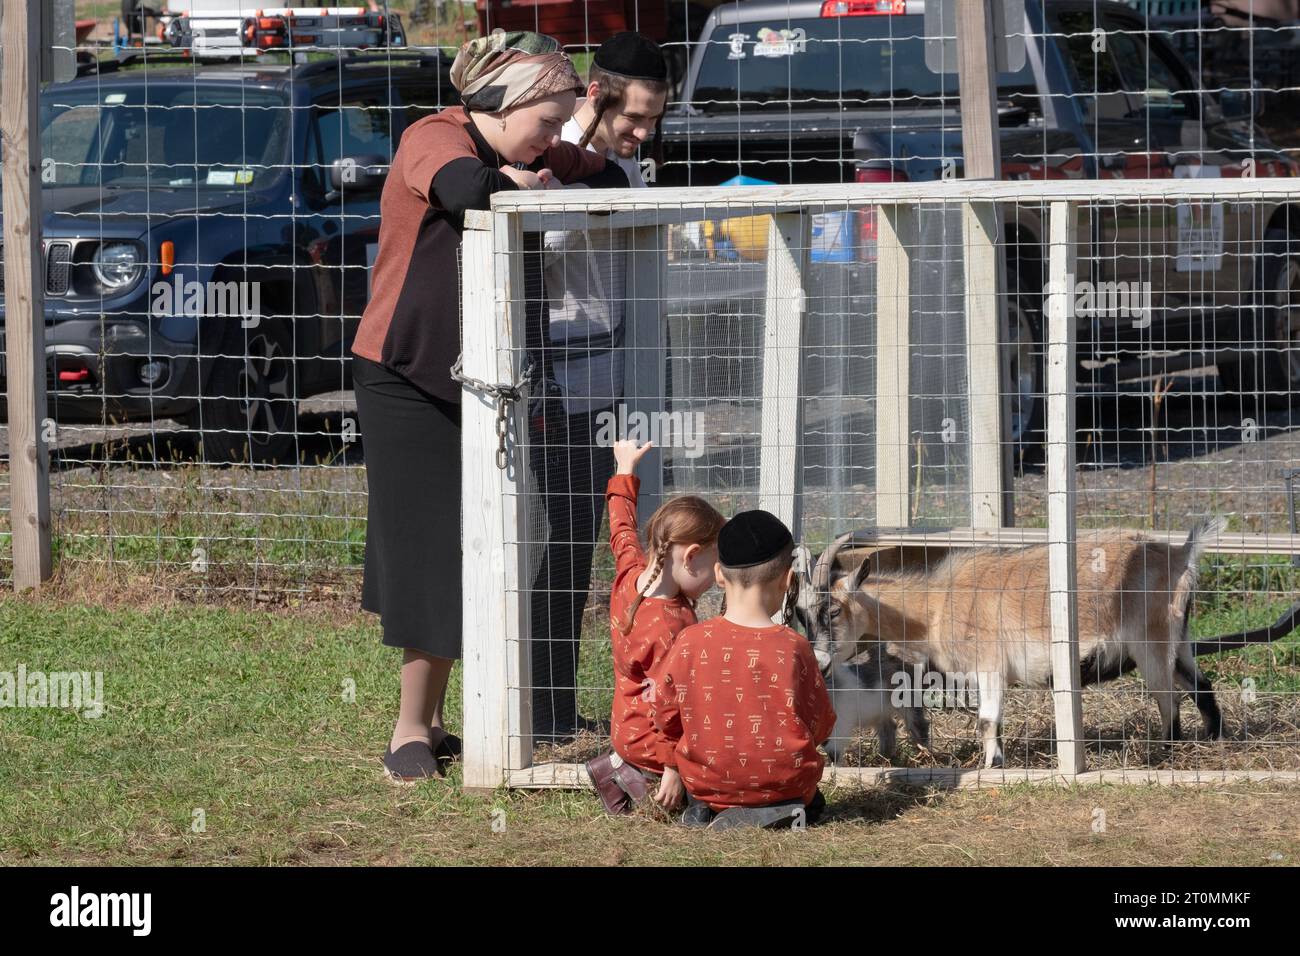 Une famille juive orthodoxe célèbre Sukkos en visitant une ferme, un zoo pour enfants et un endroit amusant pour les enfants. À Monsey, New York. Banque D'Images